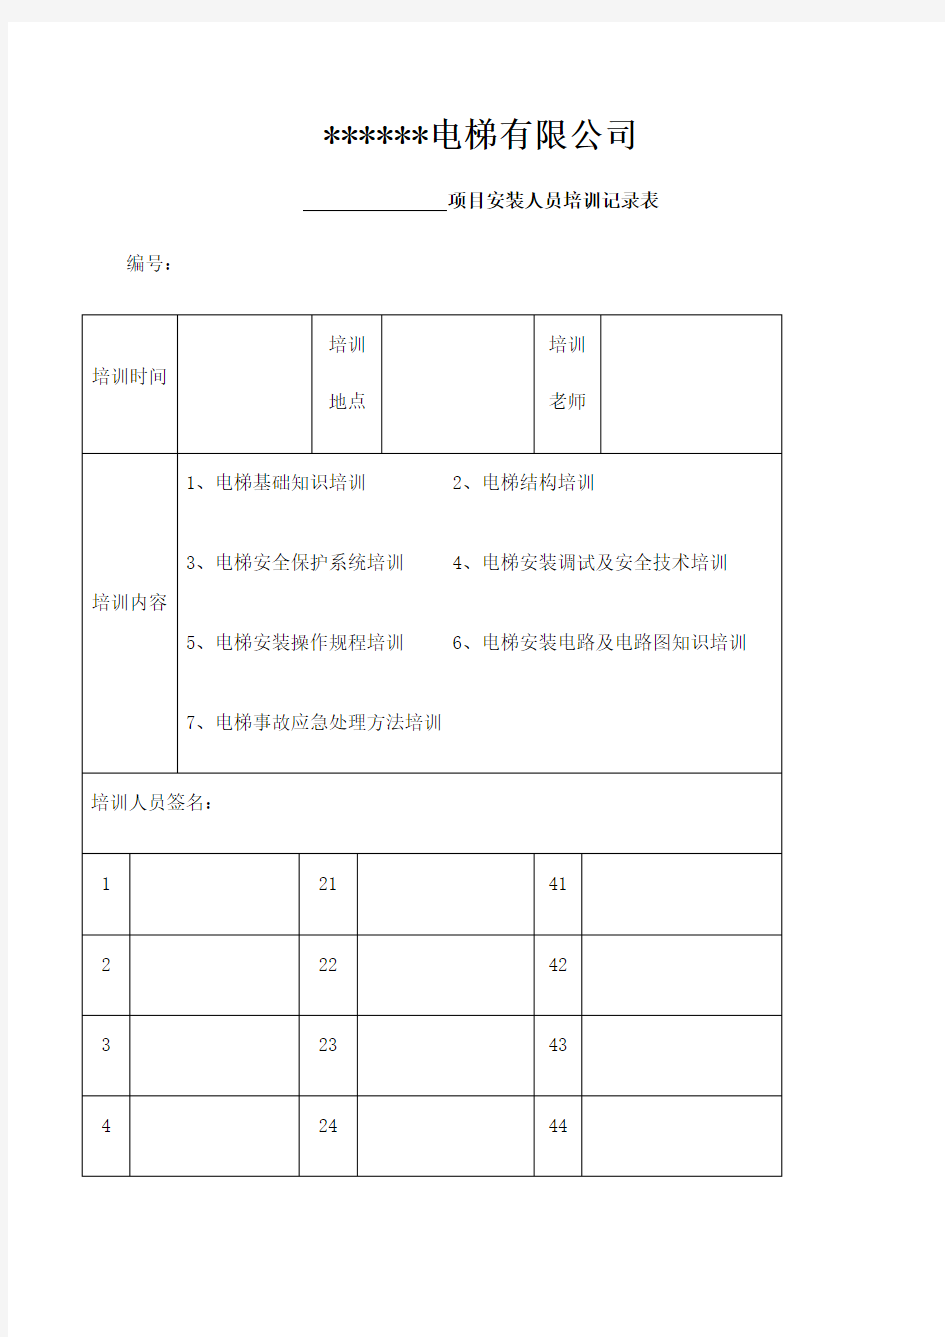 电梯培训记录表 (1)